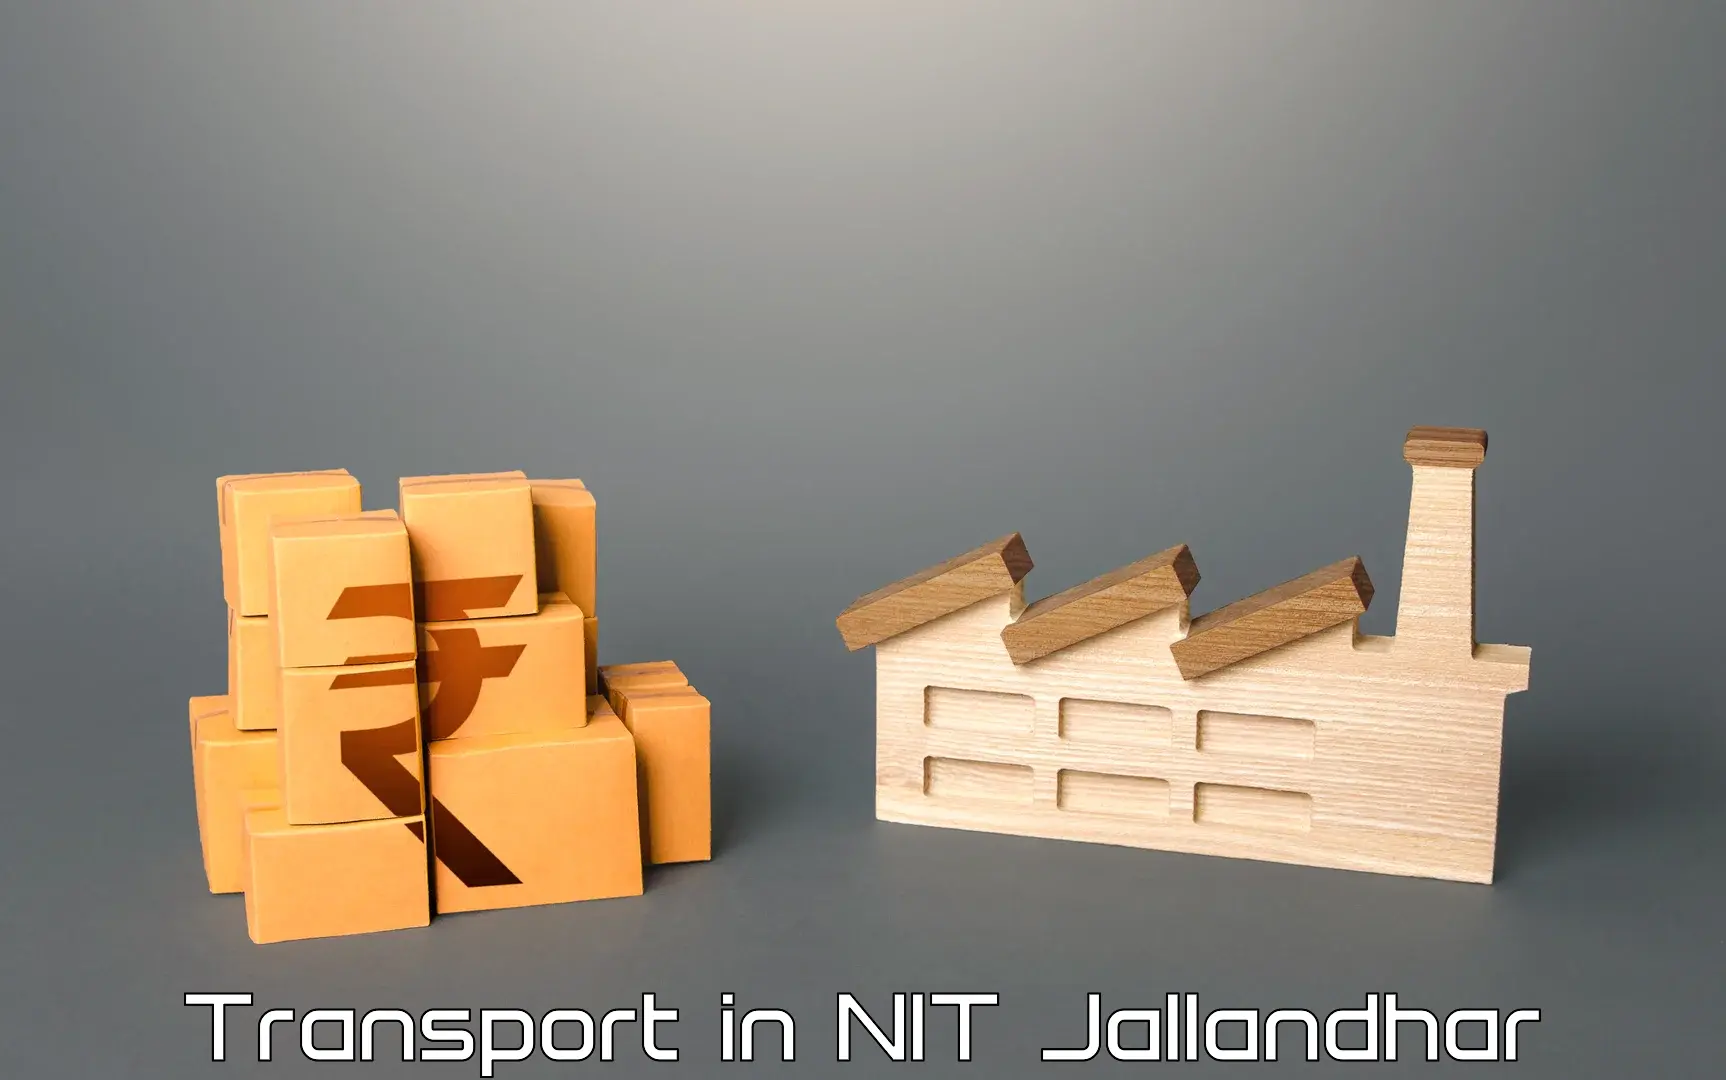 Online transport in NIT Jallandhar